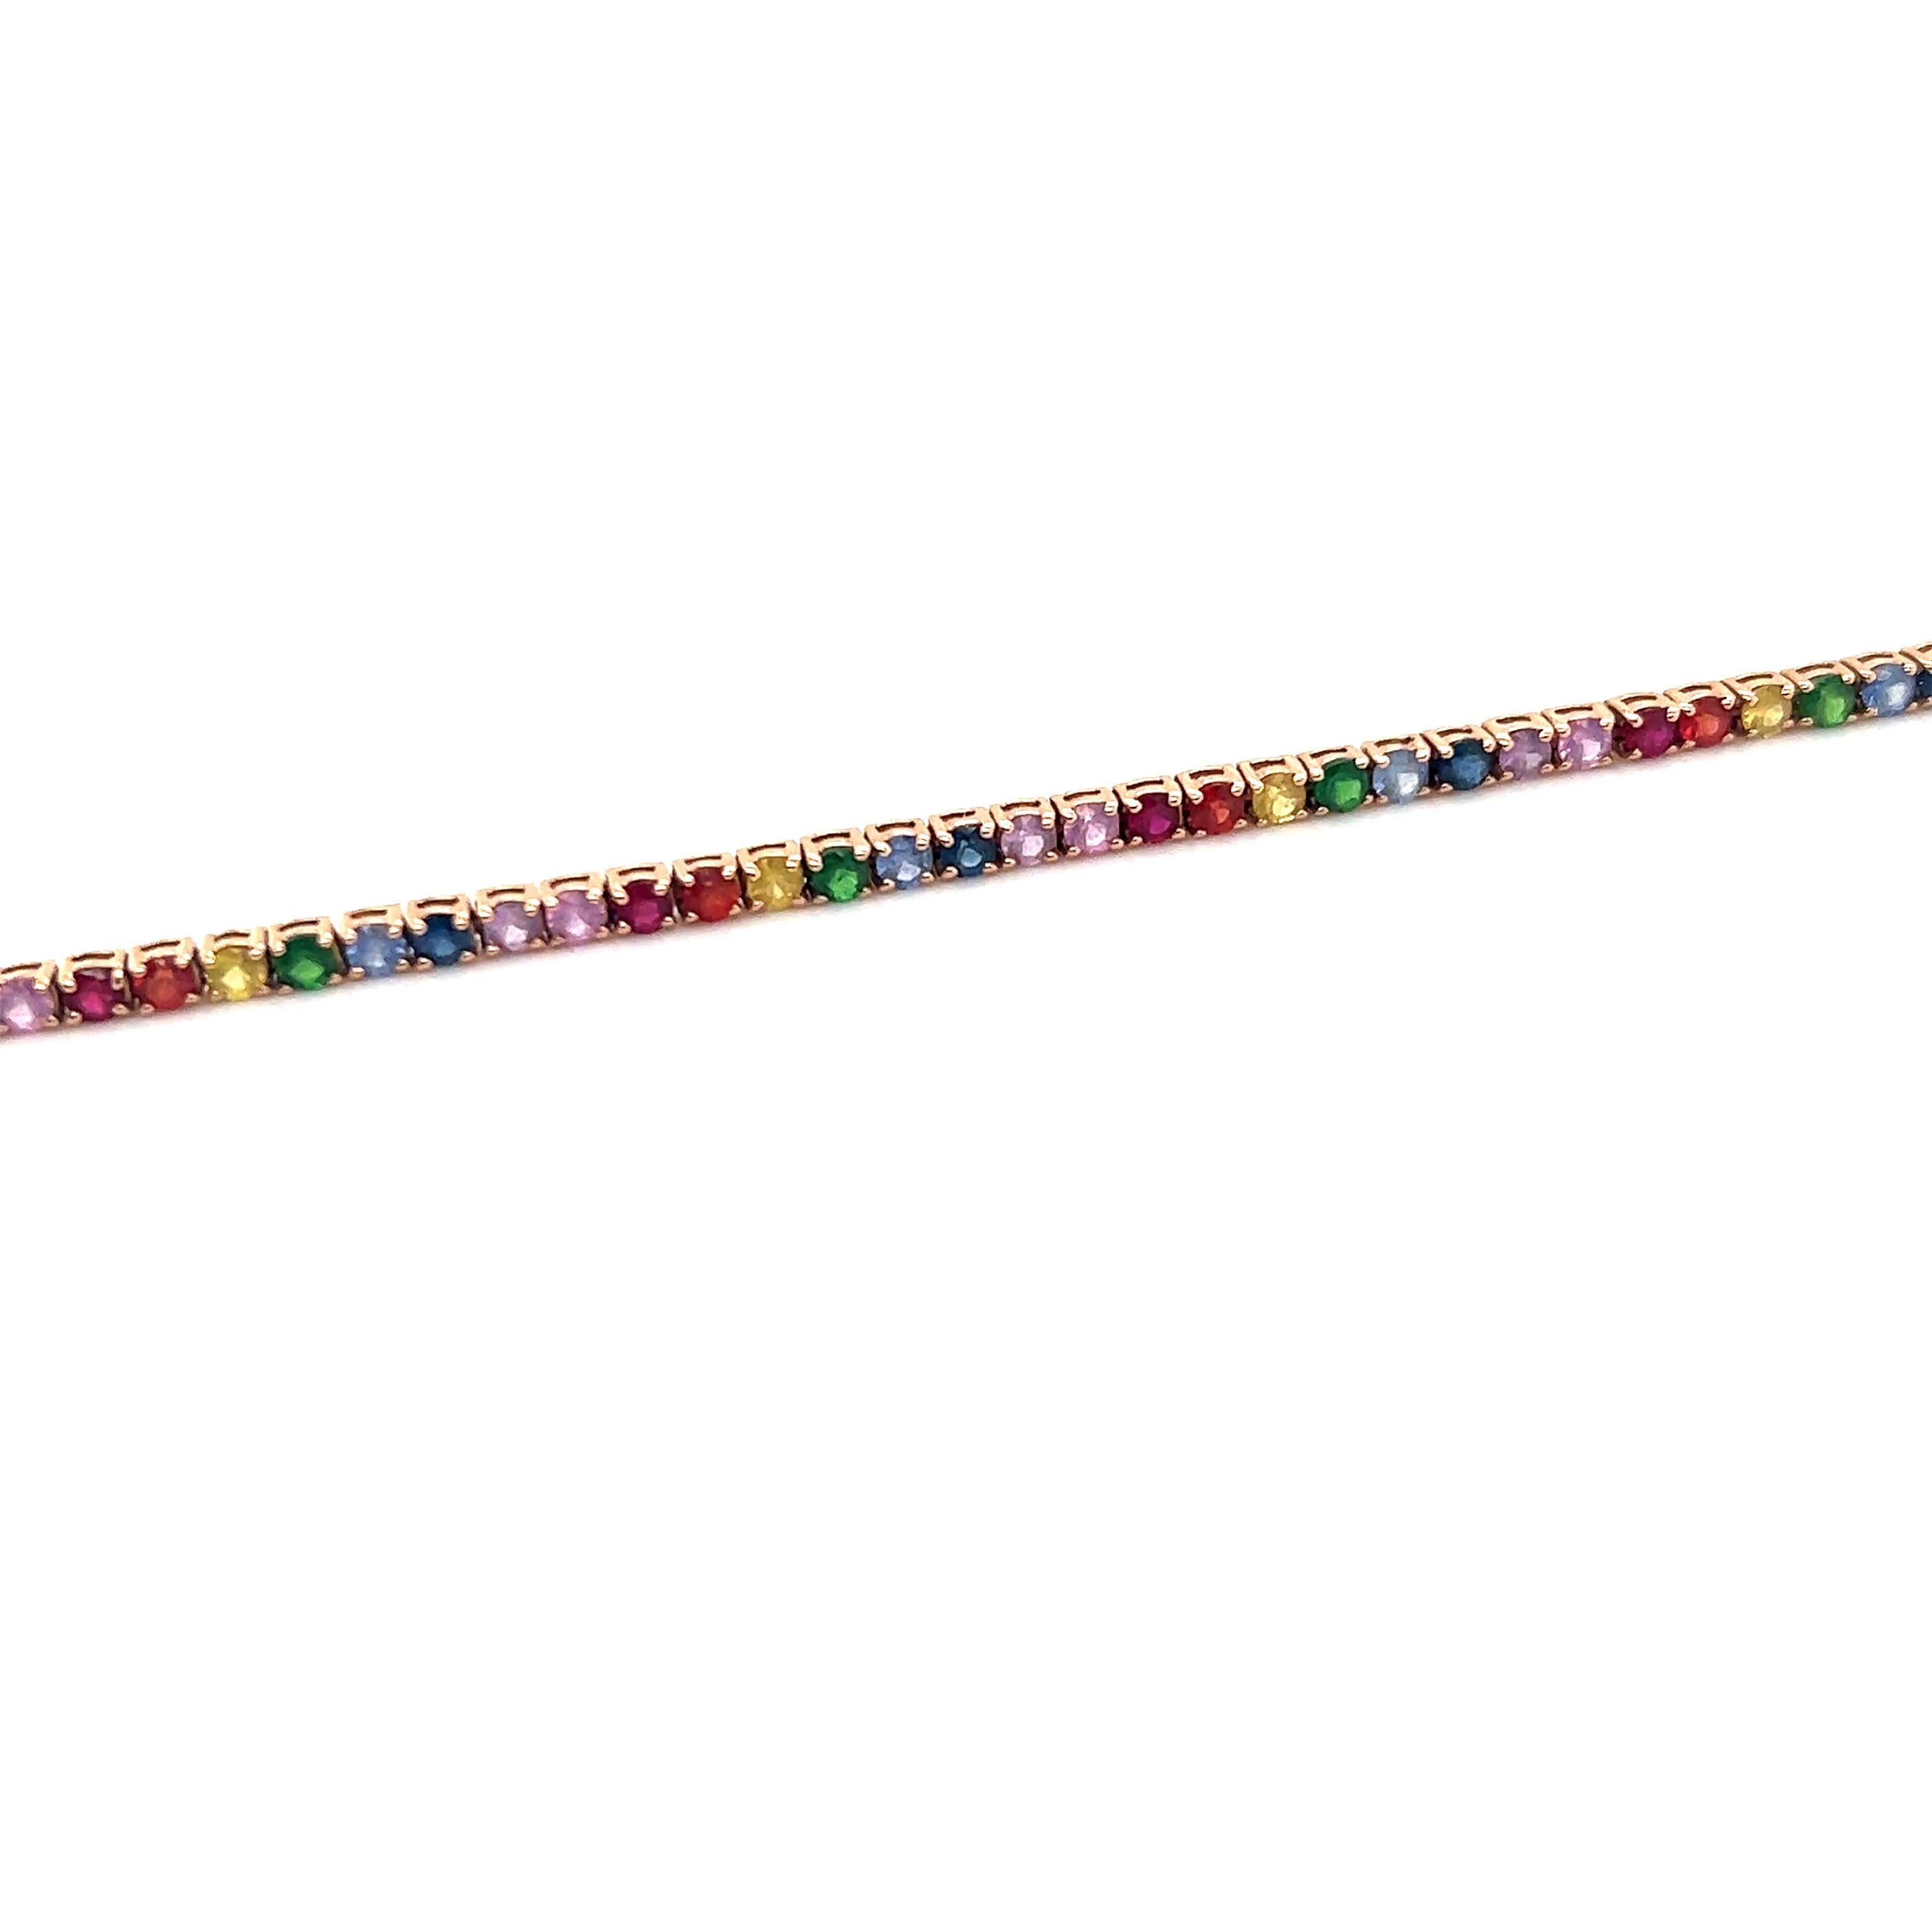 Ce bracelet moderne en or rose 14 carats présente un design très tendance.  Les saphirs existent dans une grande variété de couleurs différentes et ce bracelet est une véritable vitrine de la beauté de mère nature. Le bracelet présente des nuances